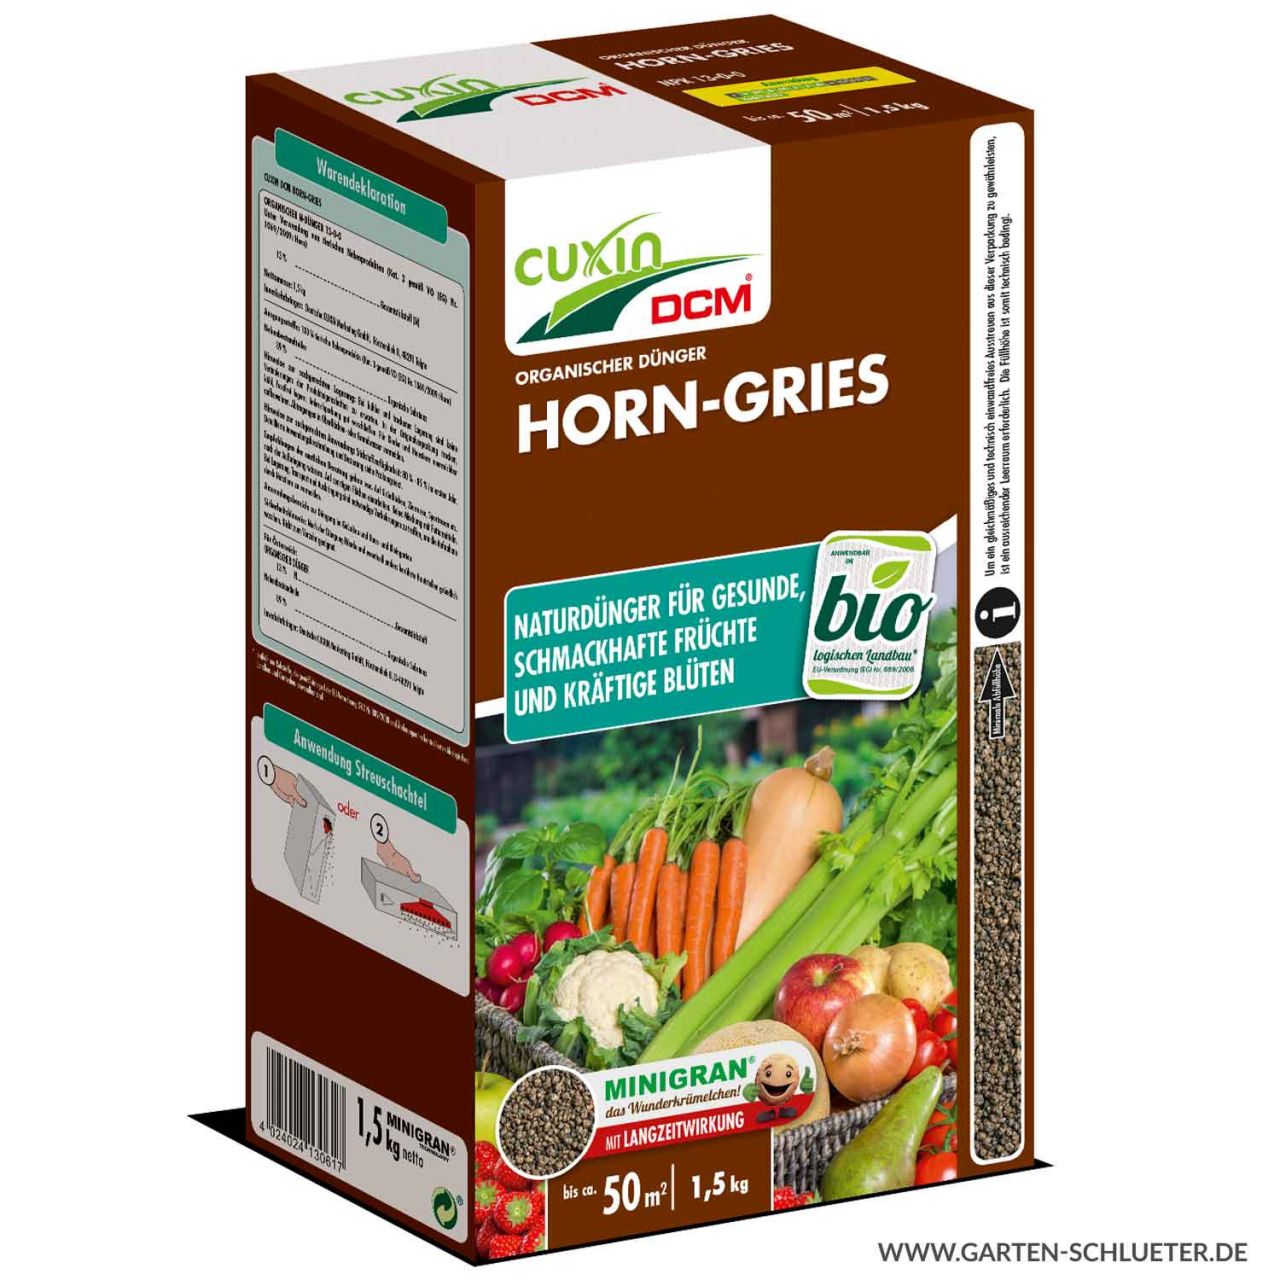 Horn-Gries  Cuxin 1.5 KG